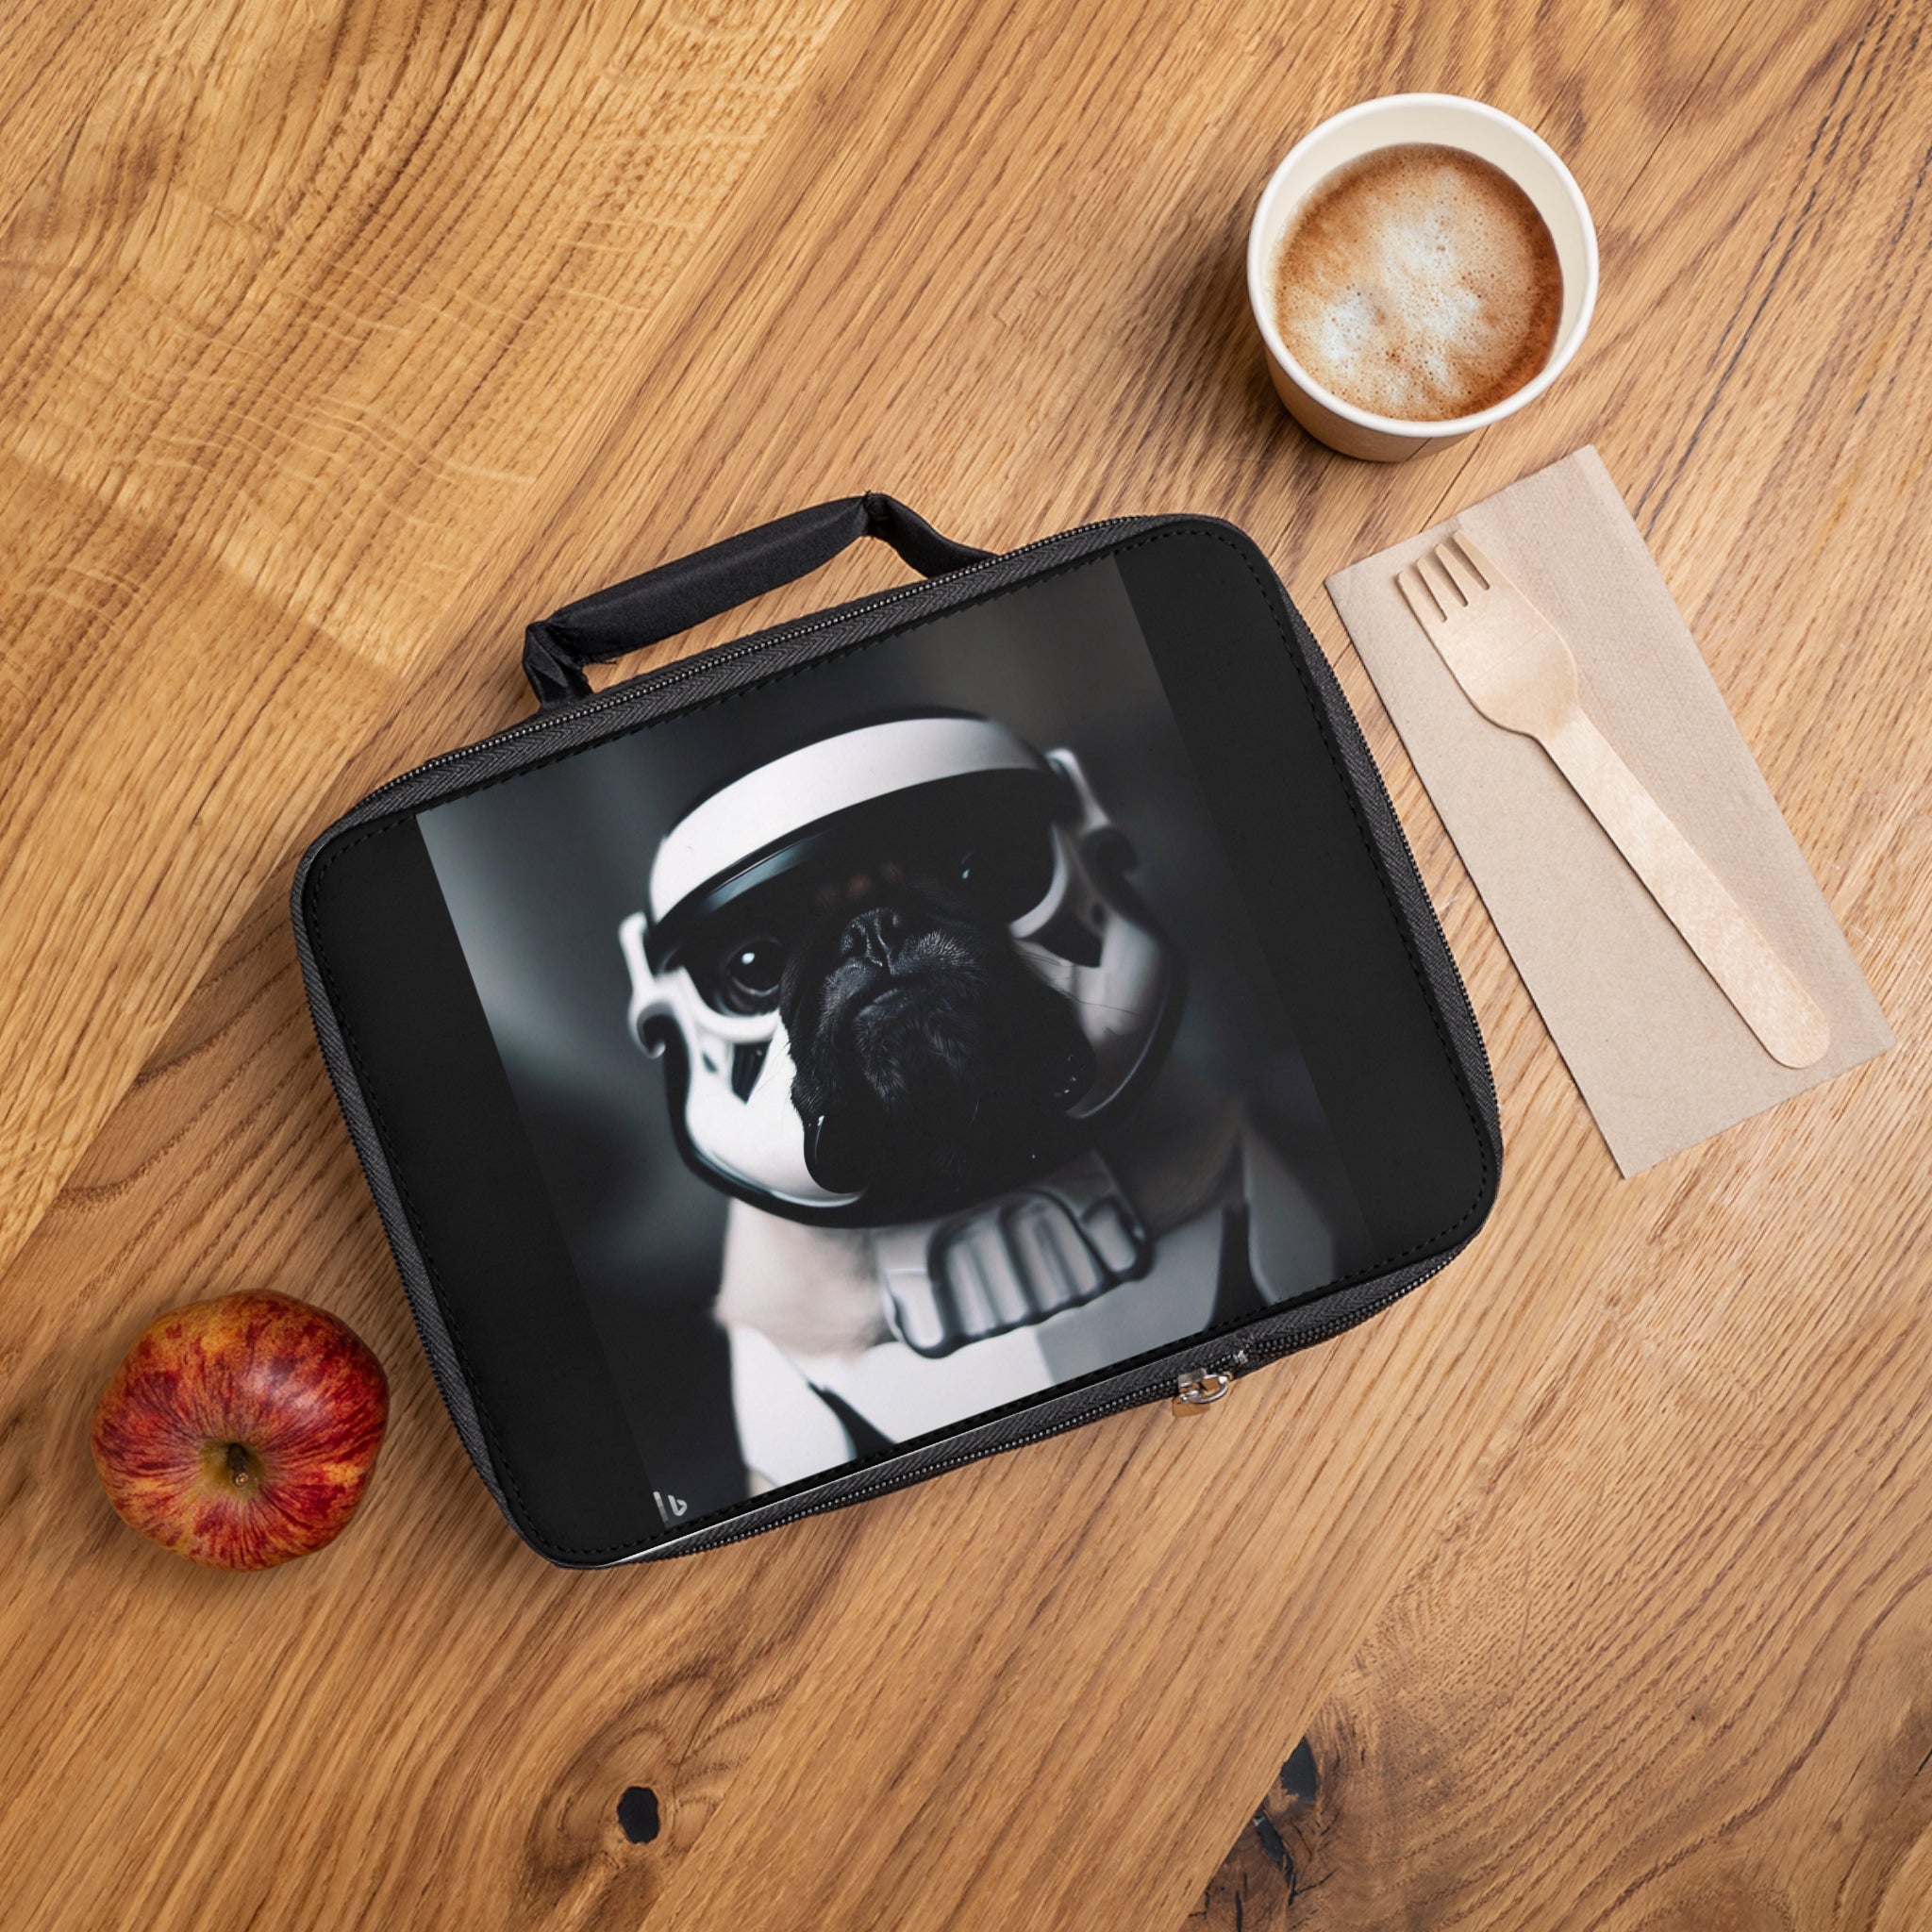 Lunch Bag Spugtacular Storm Trooper